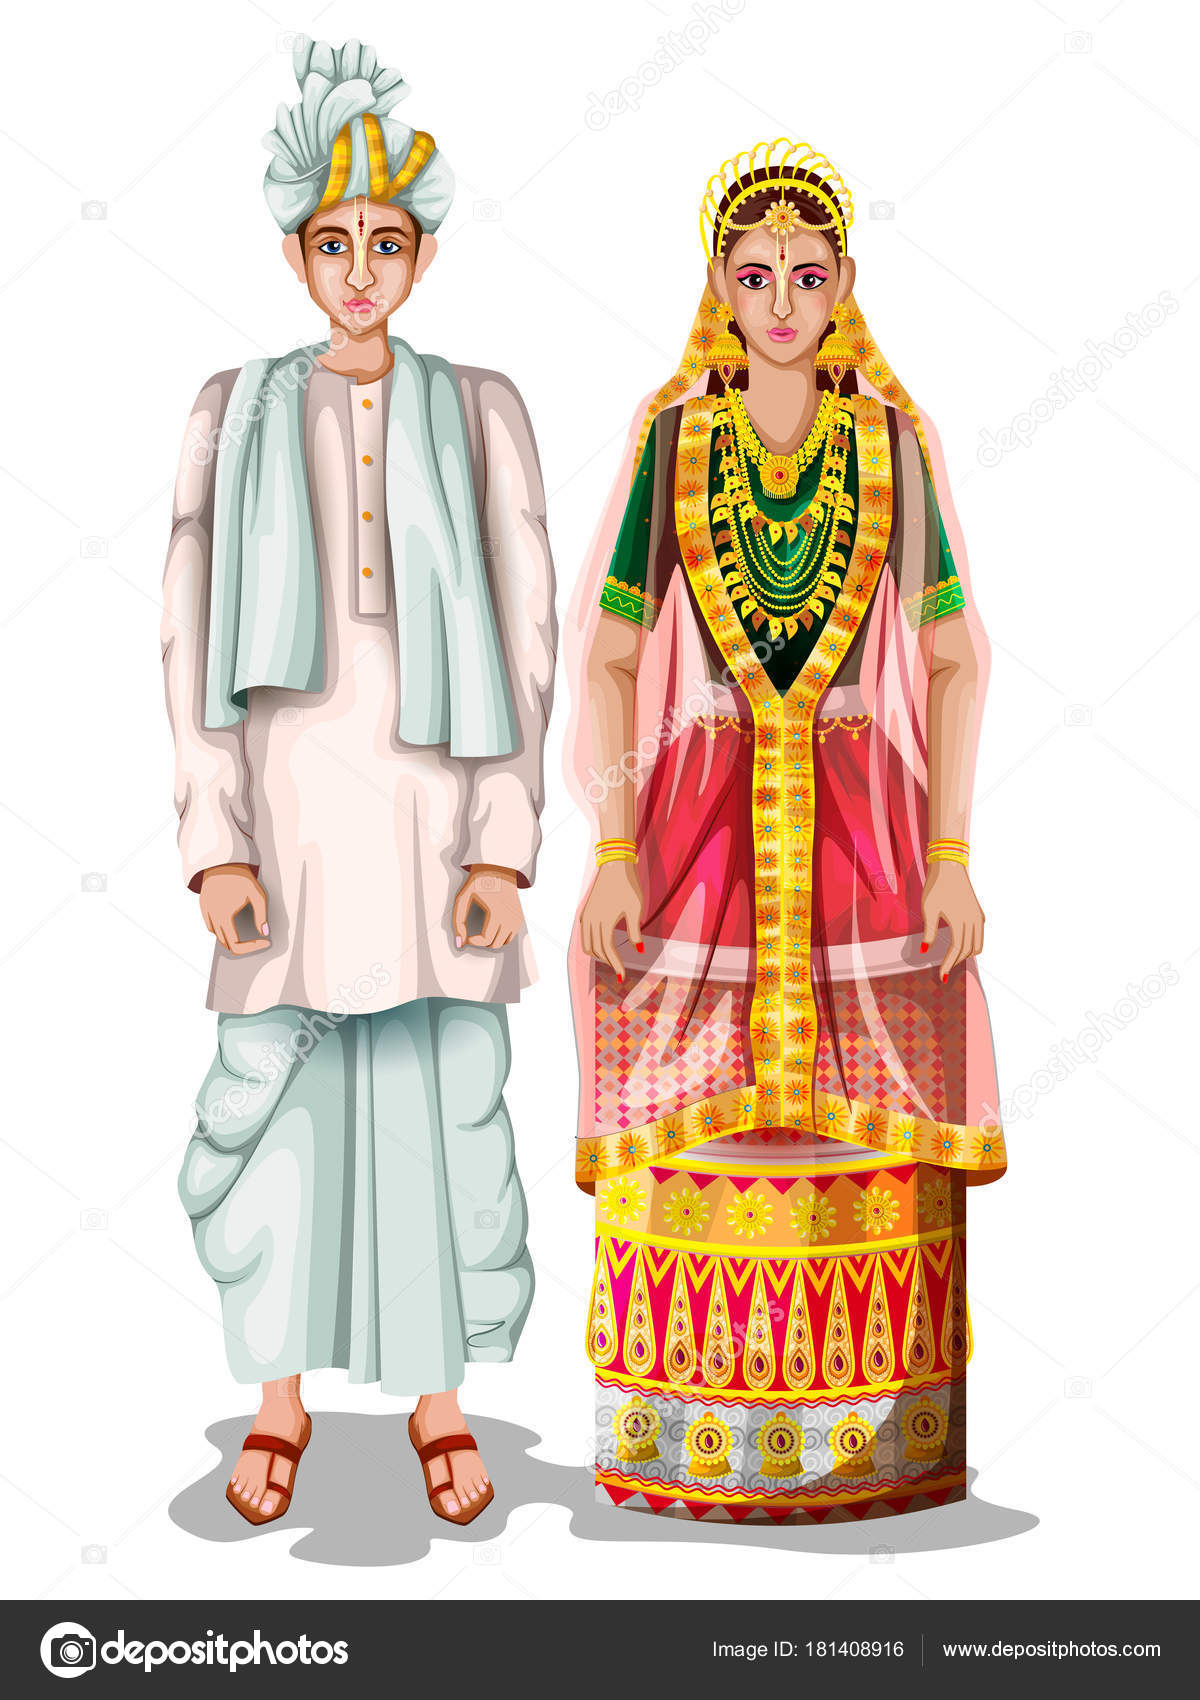 Manipur Wedding Dress Potloi: 93 year old makes Manipuri wedding dress  Potloi, know everything about it - Manipur Dress Potloi: 93 साल की दादी  बनाती है मणिपुरी शादी का जोड़ा पोटलोई, जानिए